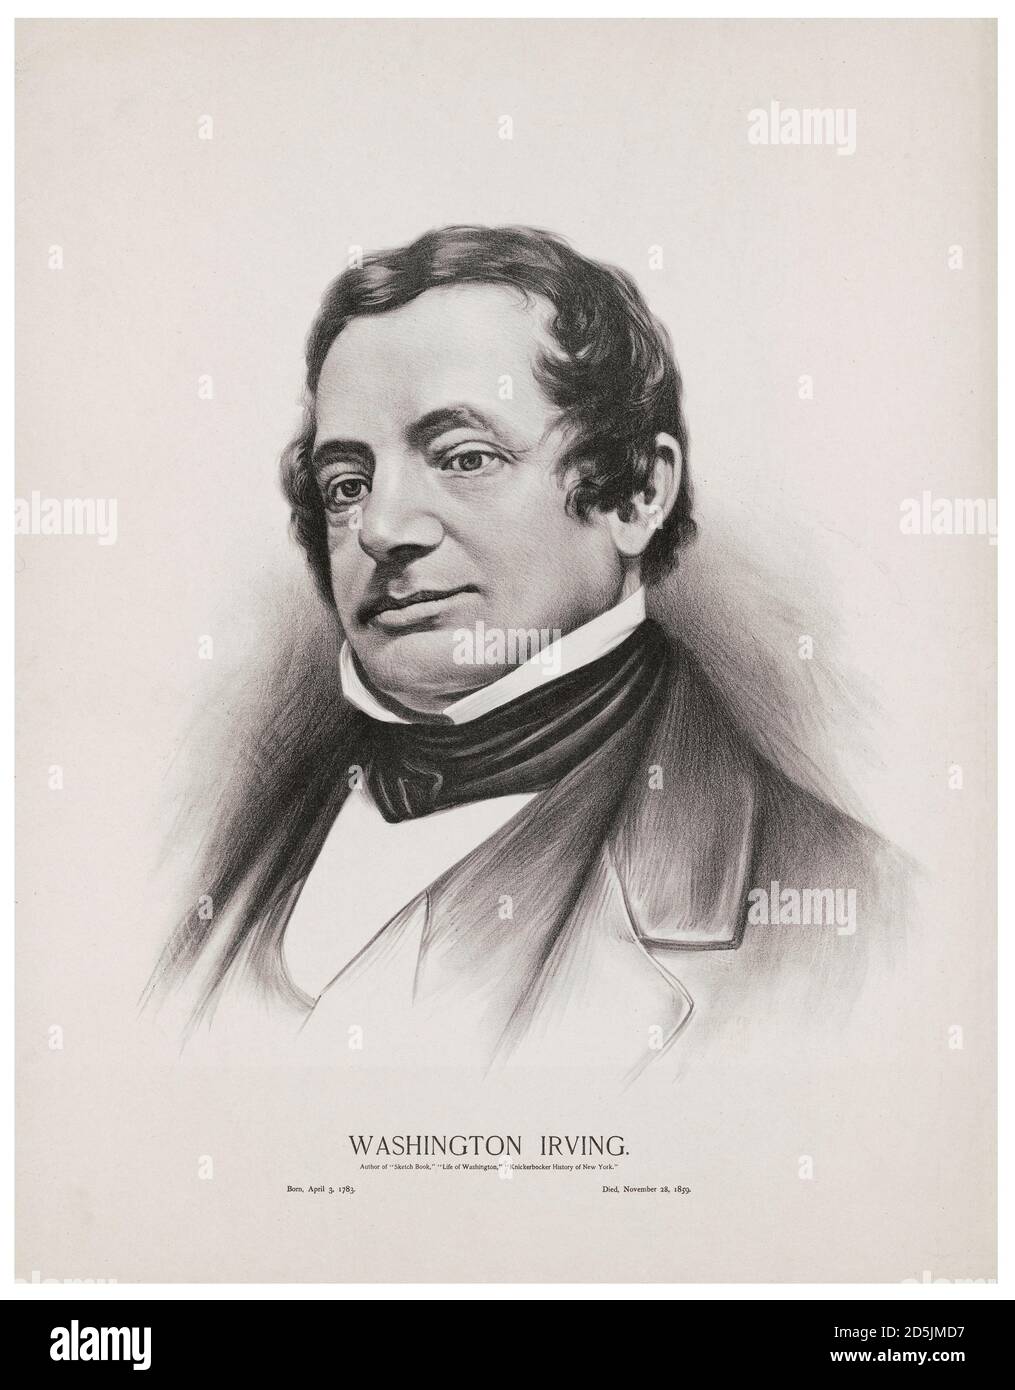 Portrait de Washington Irving. Washington Irving (1783 – 1859) était un écrivain, essayiste, biographe, historien et diplomate américain de Th Banque D'Images